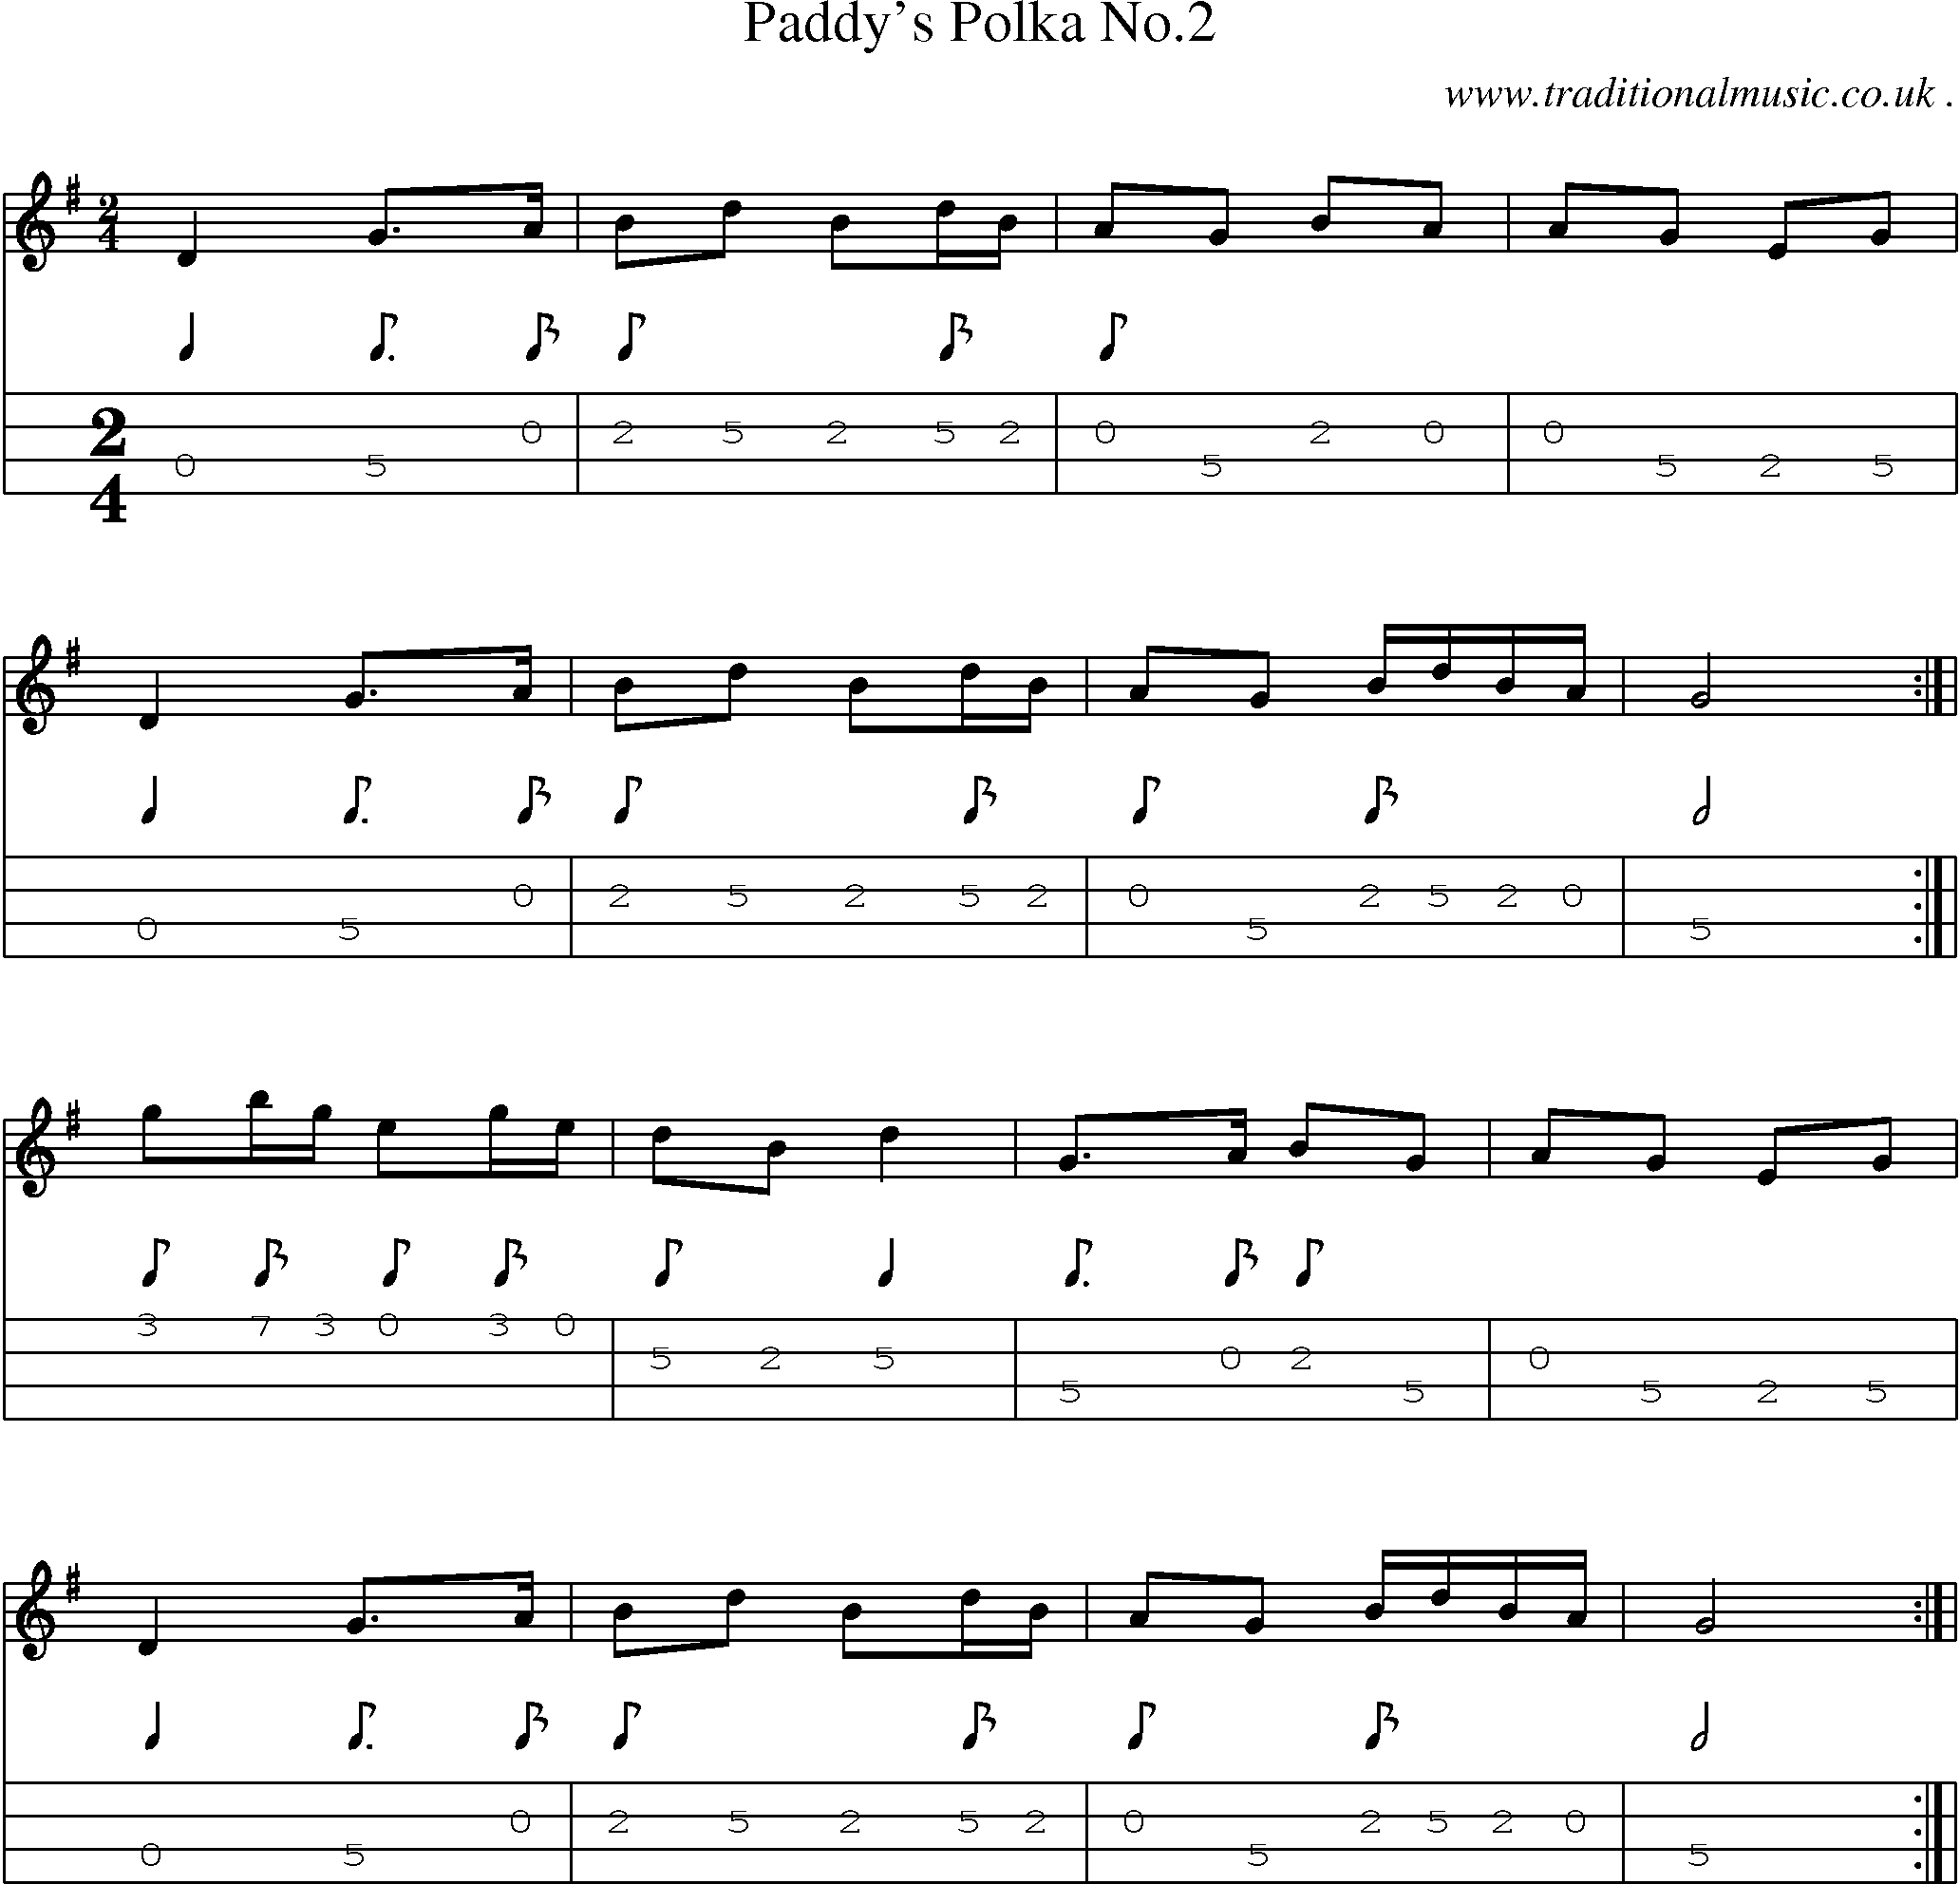 Sheet-Music and Mandolin Tabs for Paddys Polka No2